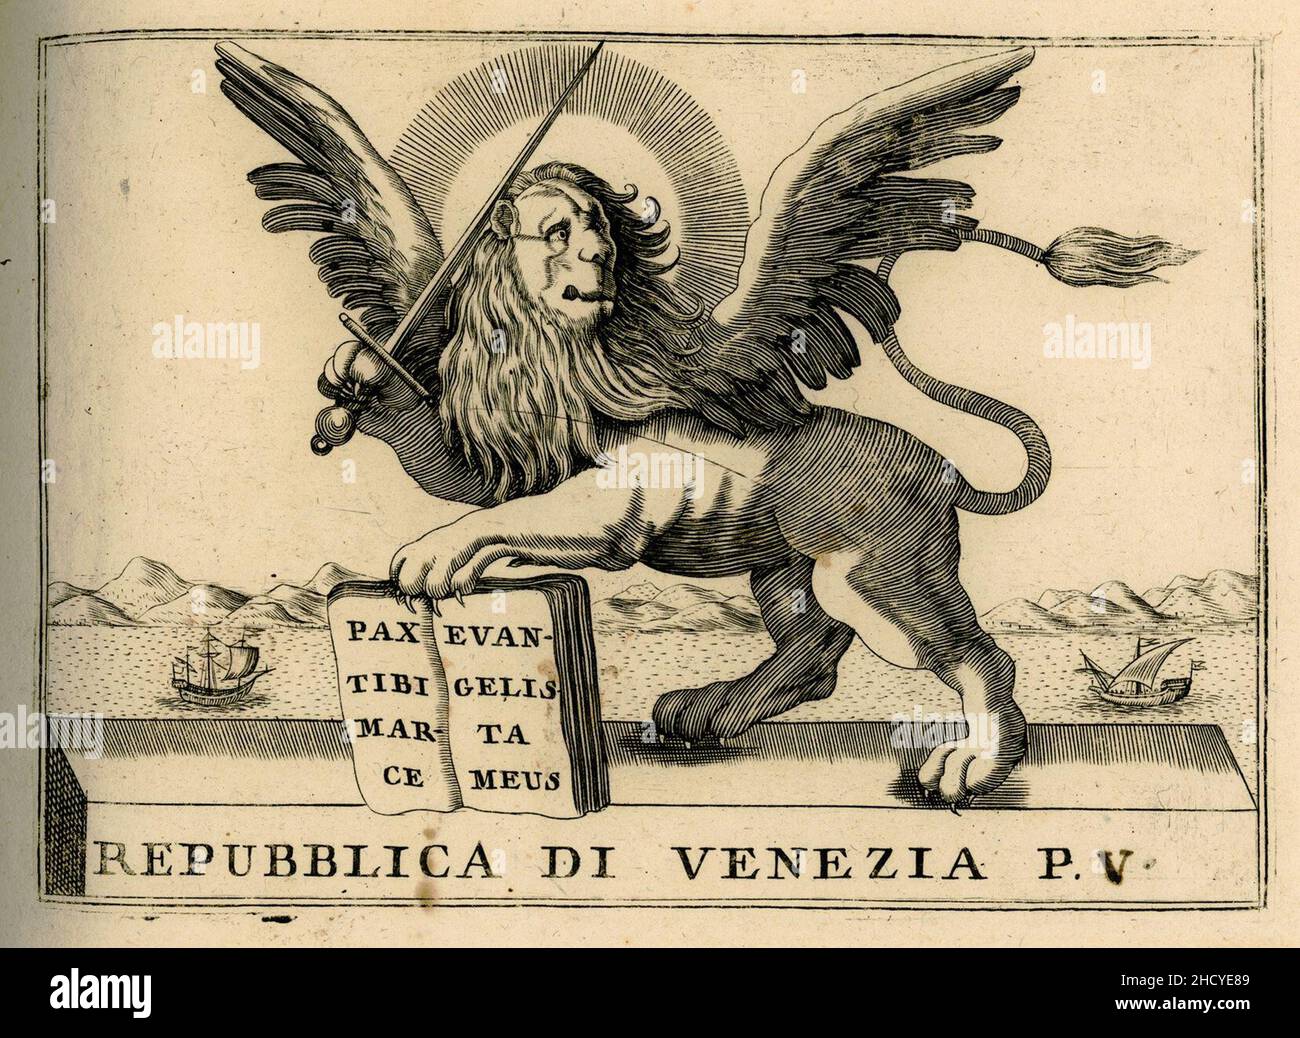 Repubblica di Venezia p V - Coronelli Vincenzo - 1688. Stock Photo